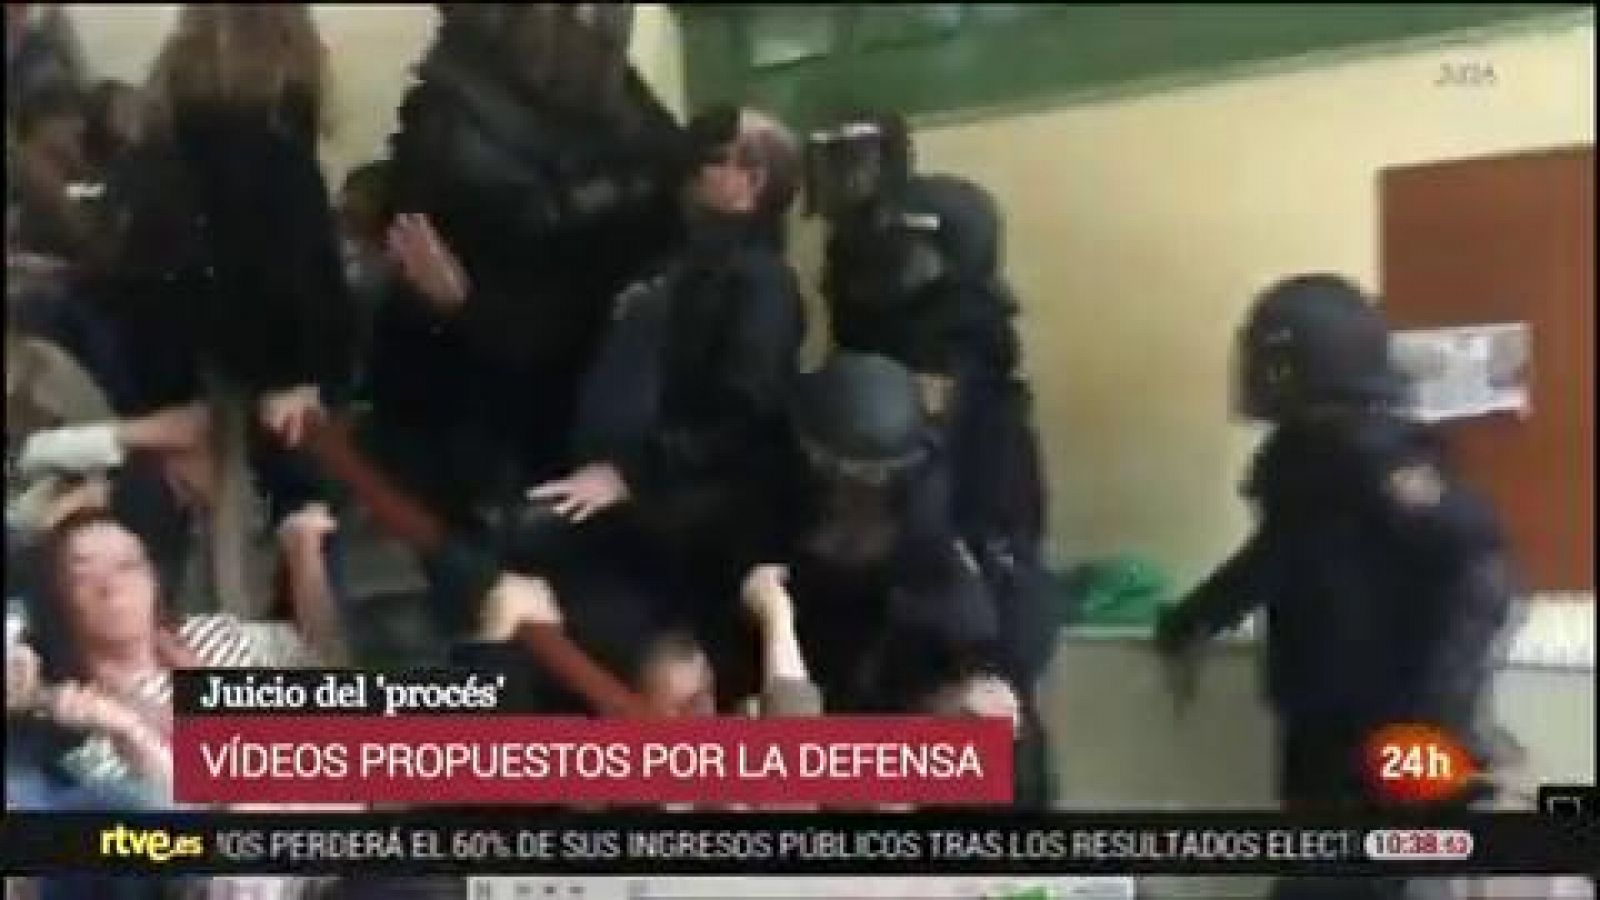 Juicio procés: Un policía salta sobre un ciudadano en el colegio Pau Claris, en este vídeo de las defensas